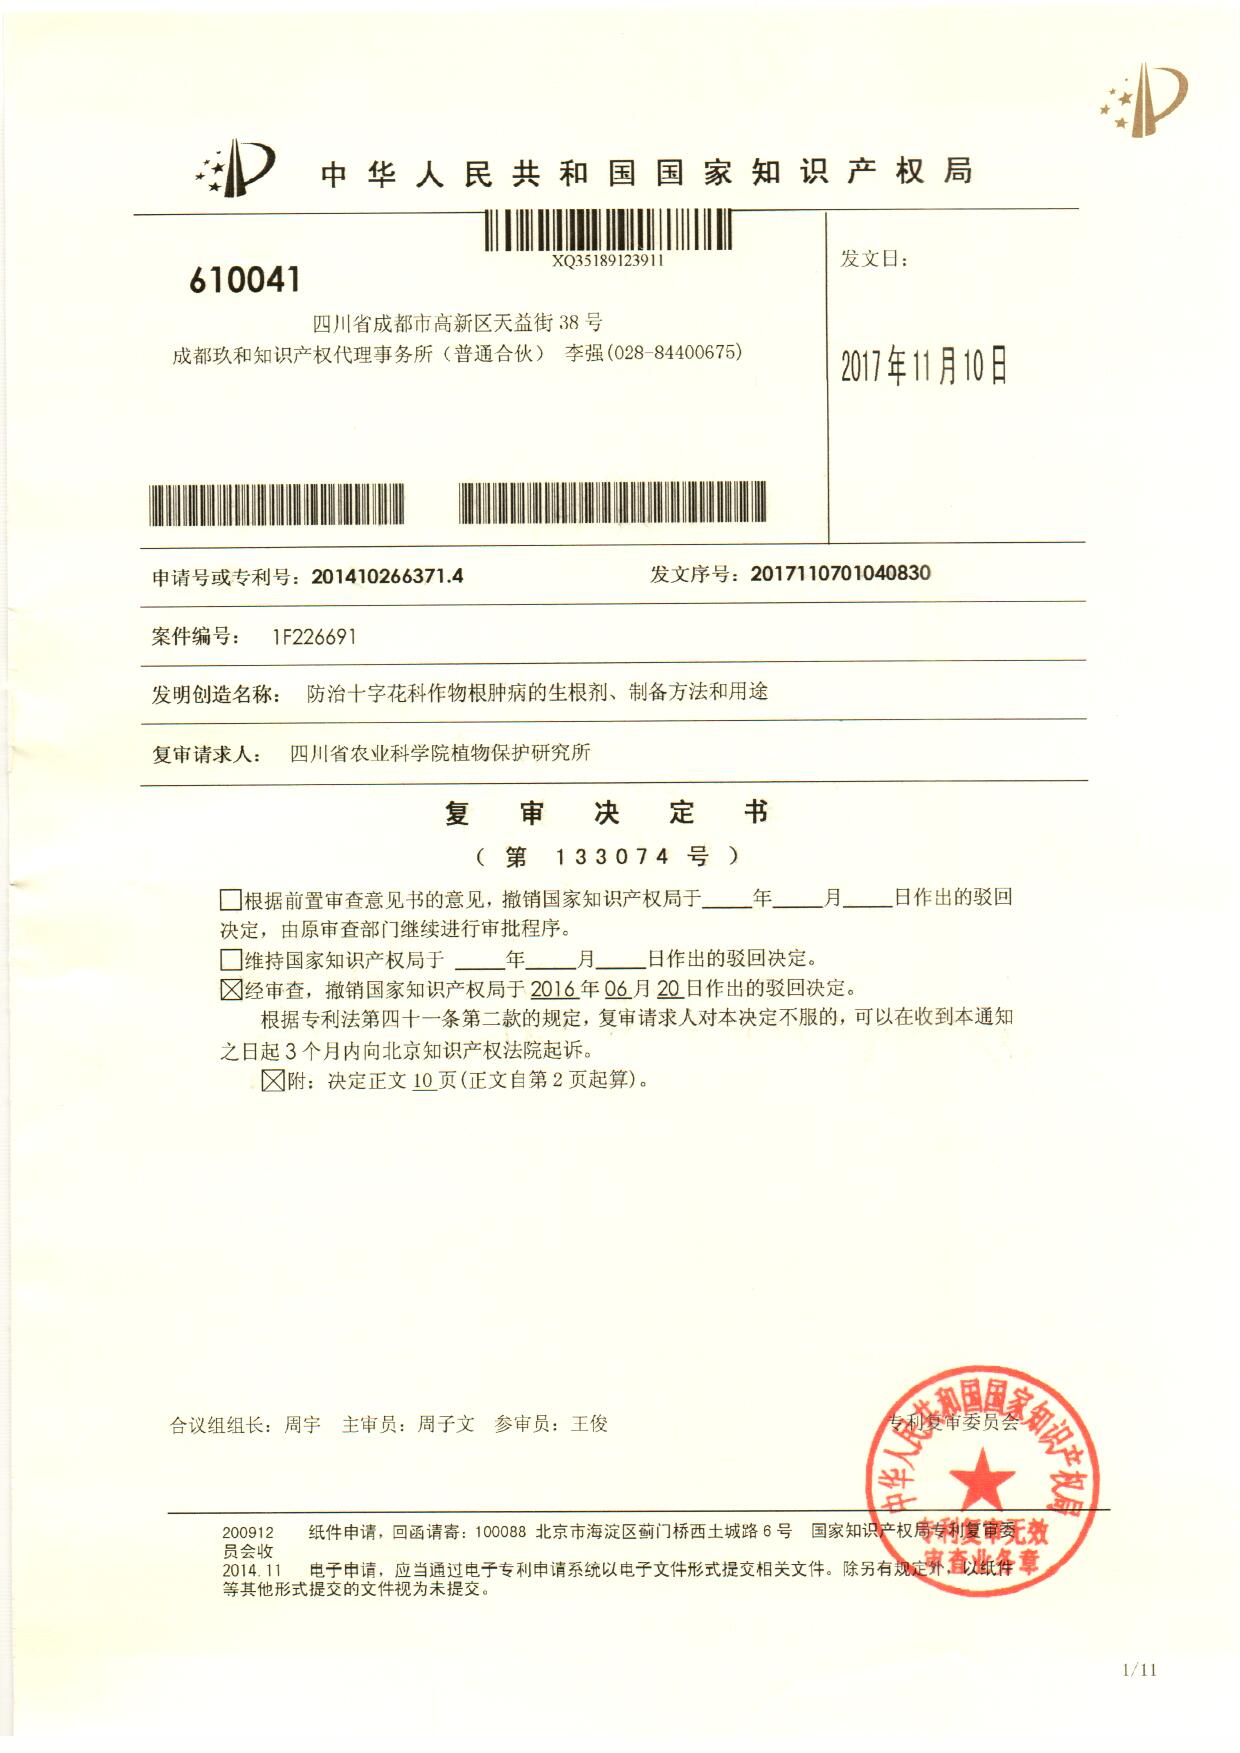 成功代理四川省农业科学院植物保护研究所专利申请的驳回复审事务